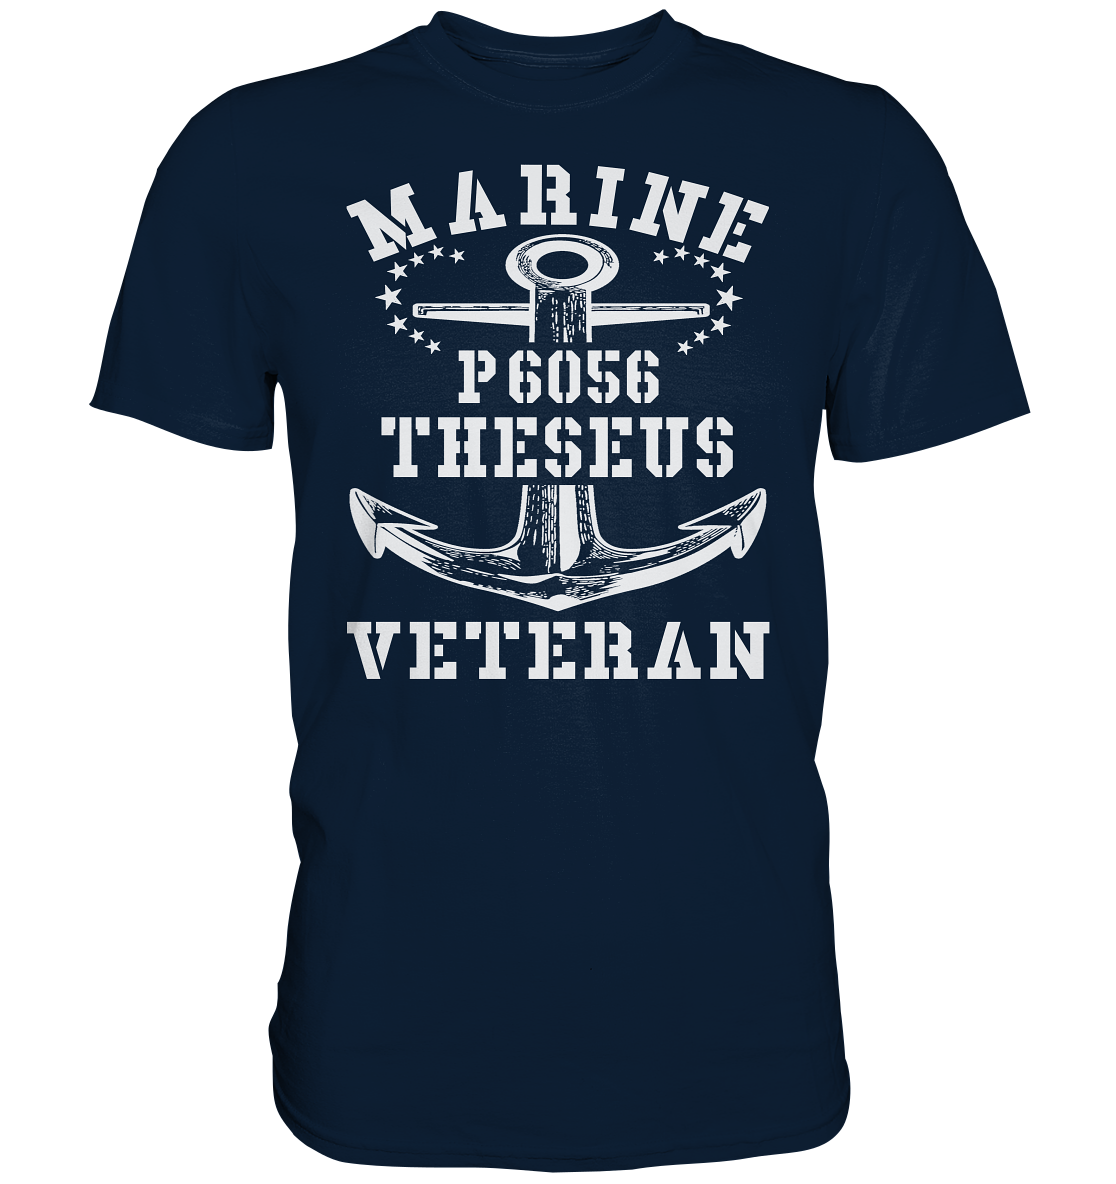 U-Jagdboot P6056 THESEUS Marine Veteran - Premium Shirt